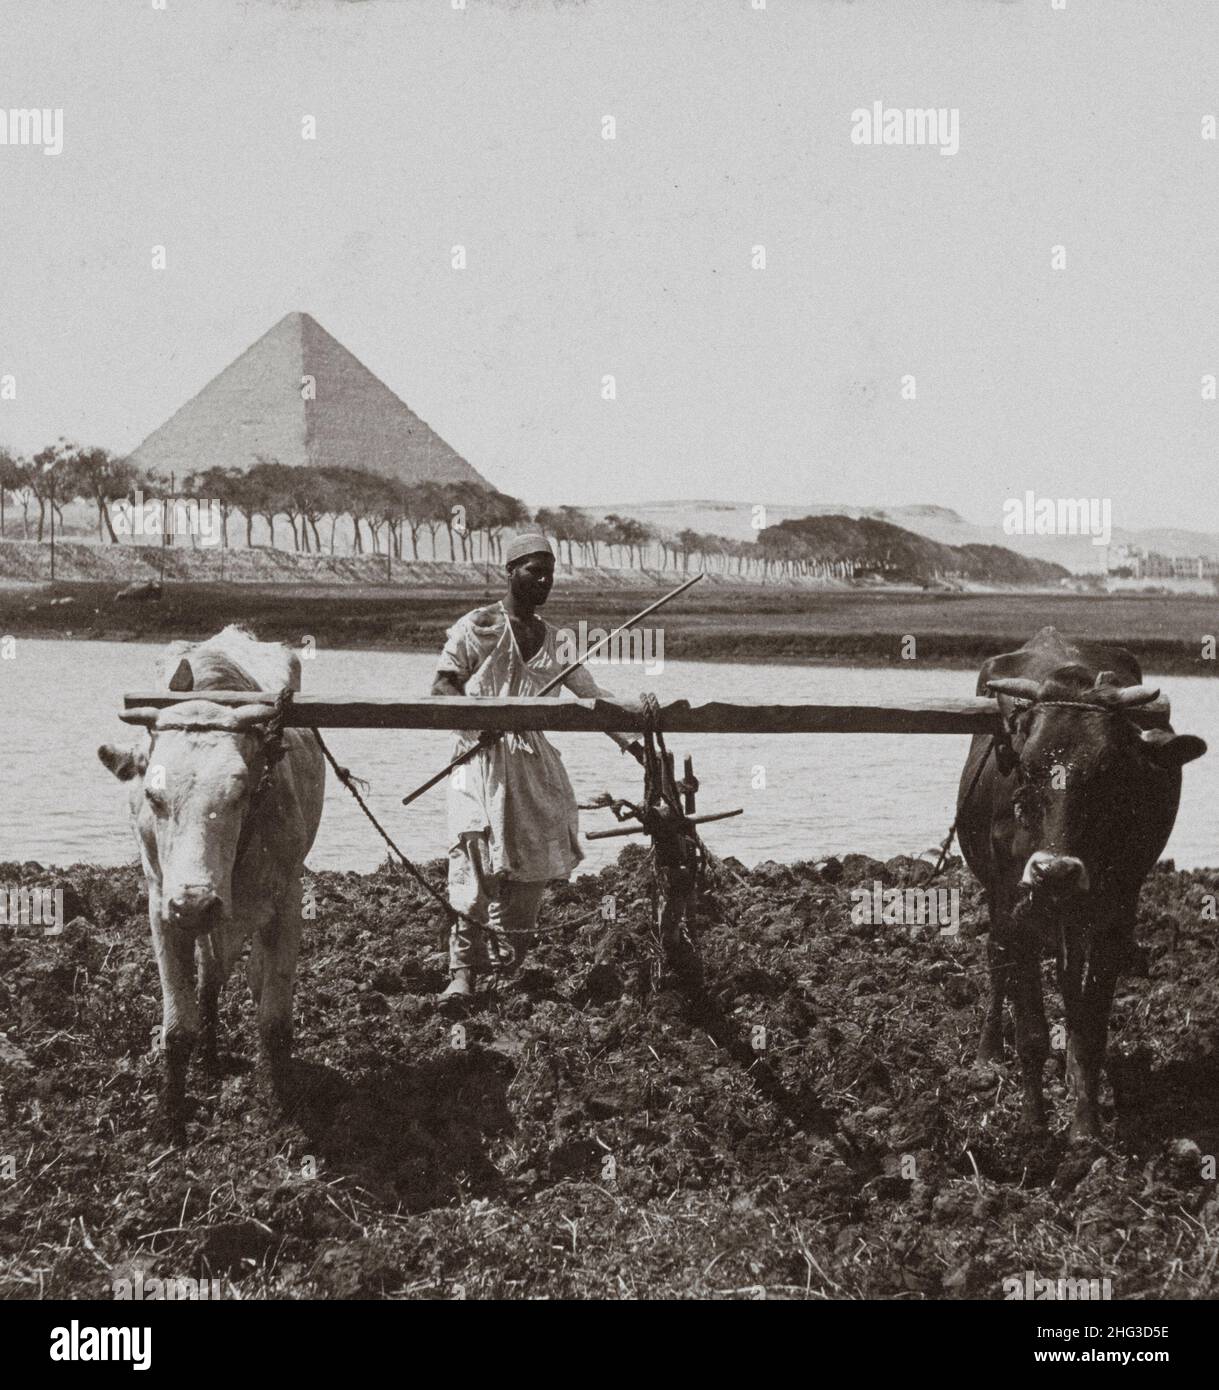 Foto vintage de fellah egipcio con pirámides de Giza en el fondo. Labrando el suelo como en los días antiguos, Egipto. 1899 Foto de stock